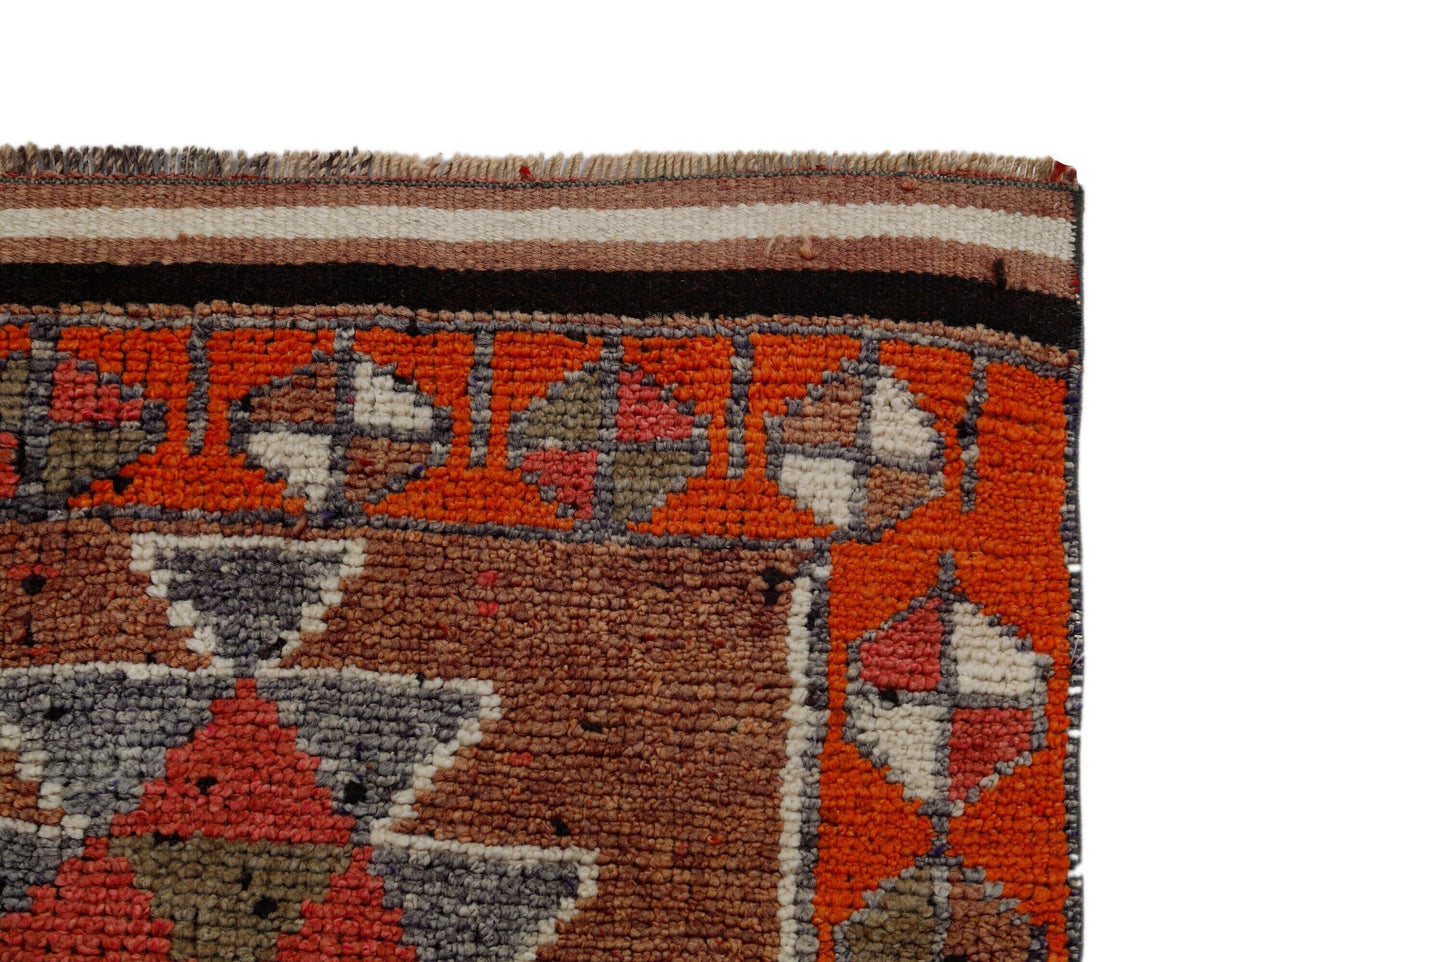 Cherry Red Runner rug, Turkish Oushak Vintage Rug Runner, 3x12 Runner rug,Bohemian Carpet Runner,Anatolia,Made in Turkey,7193